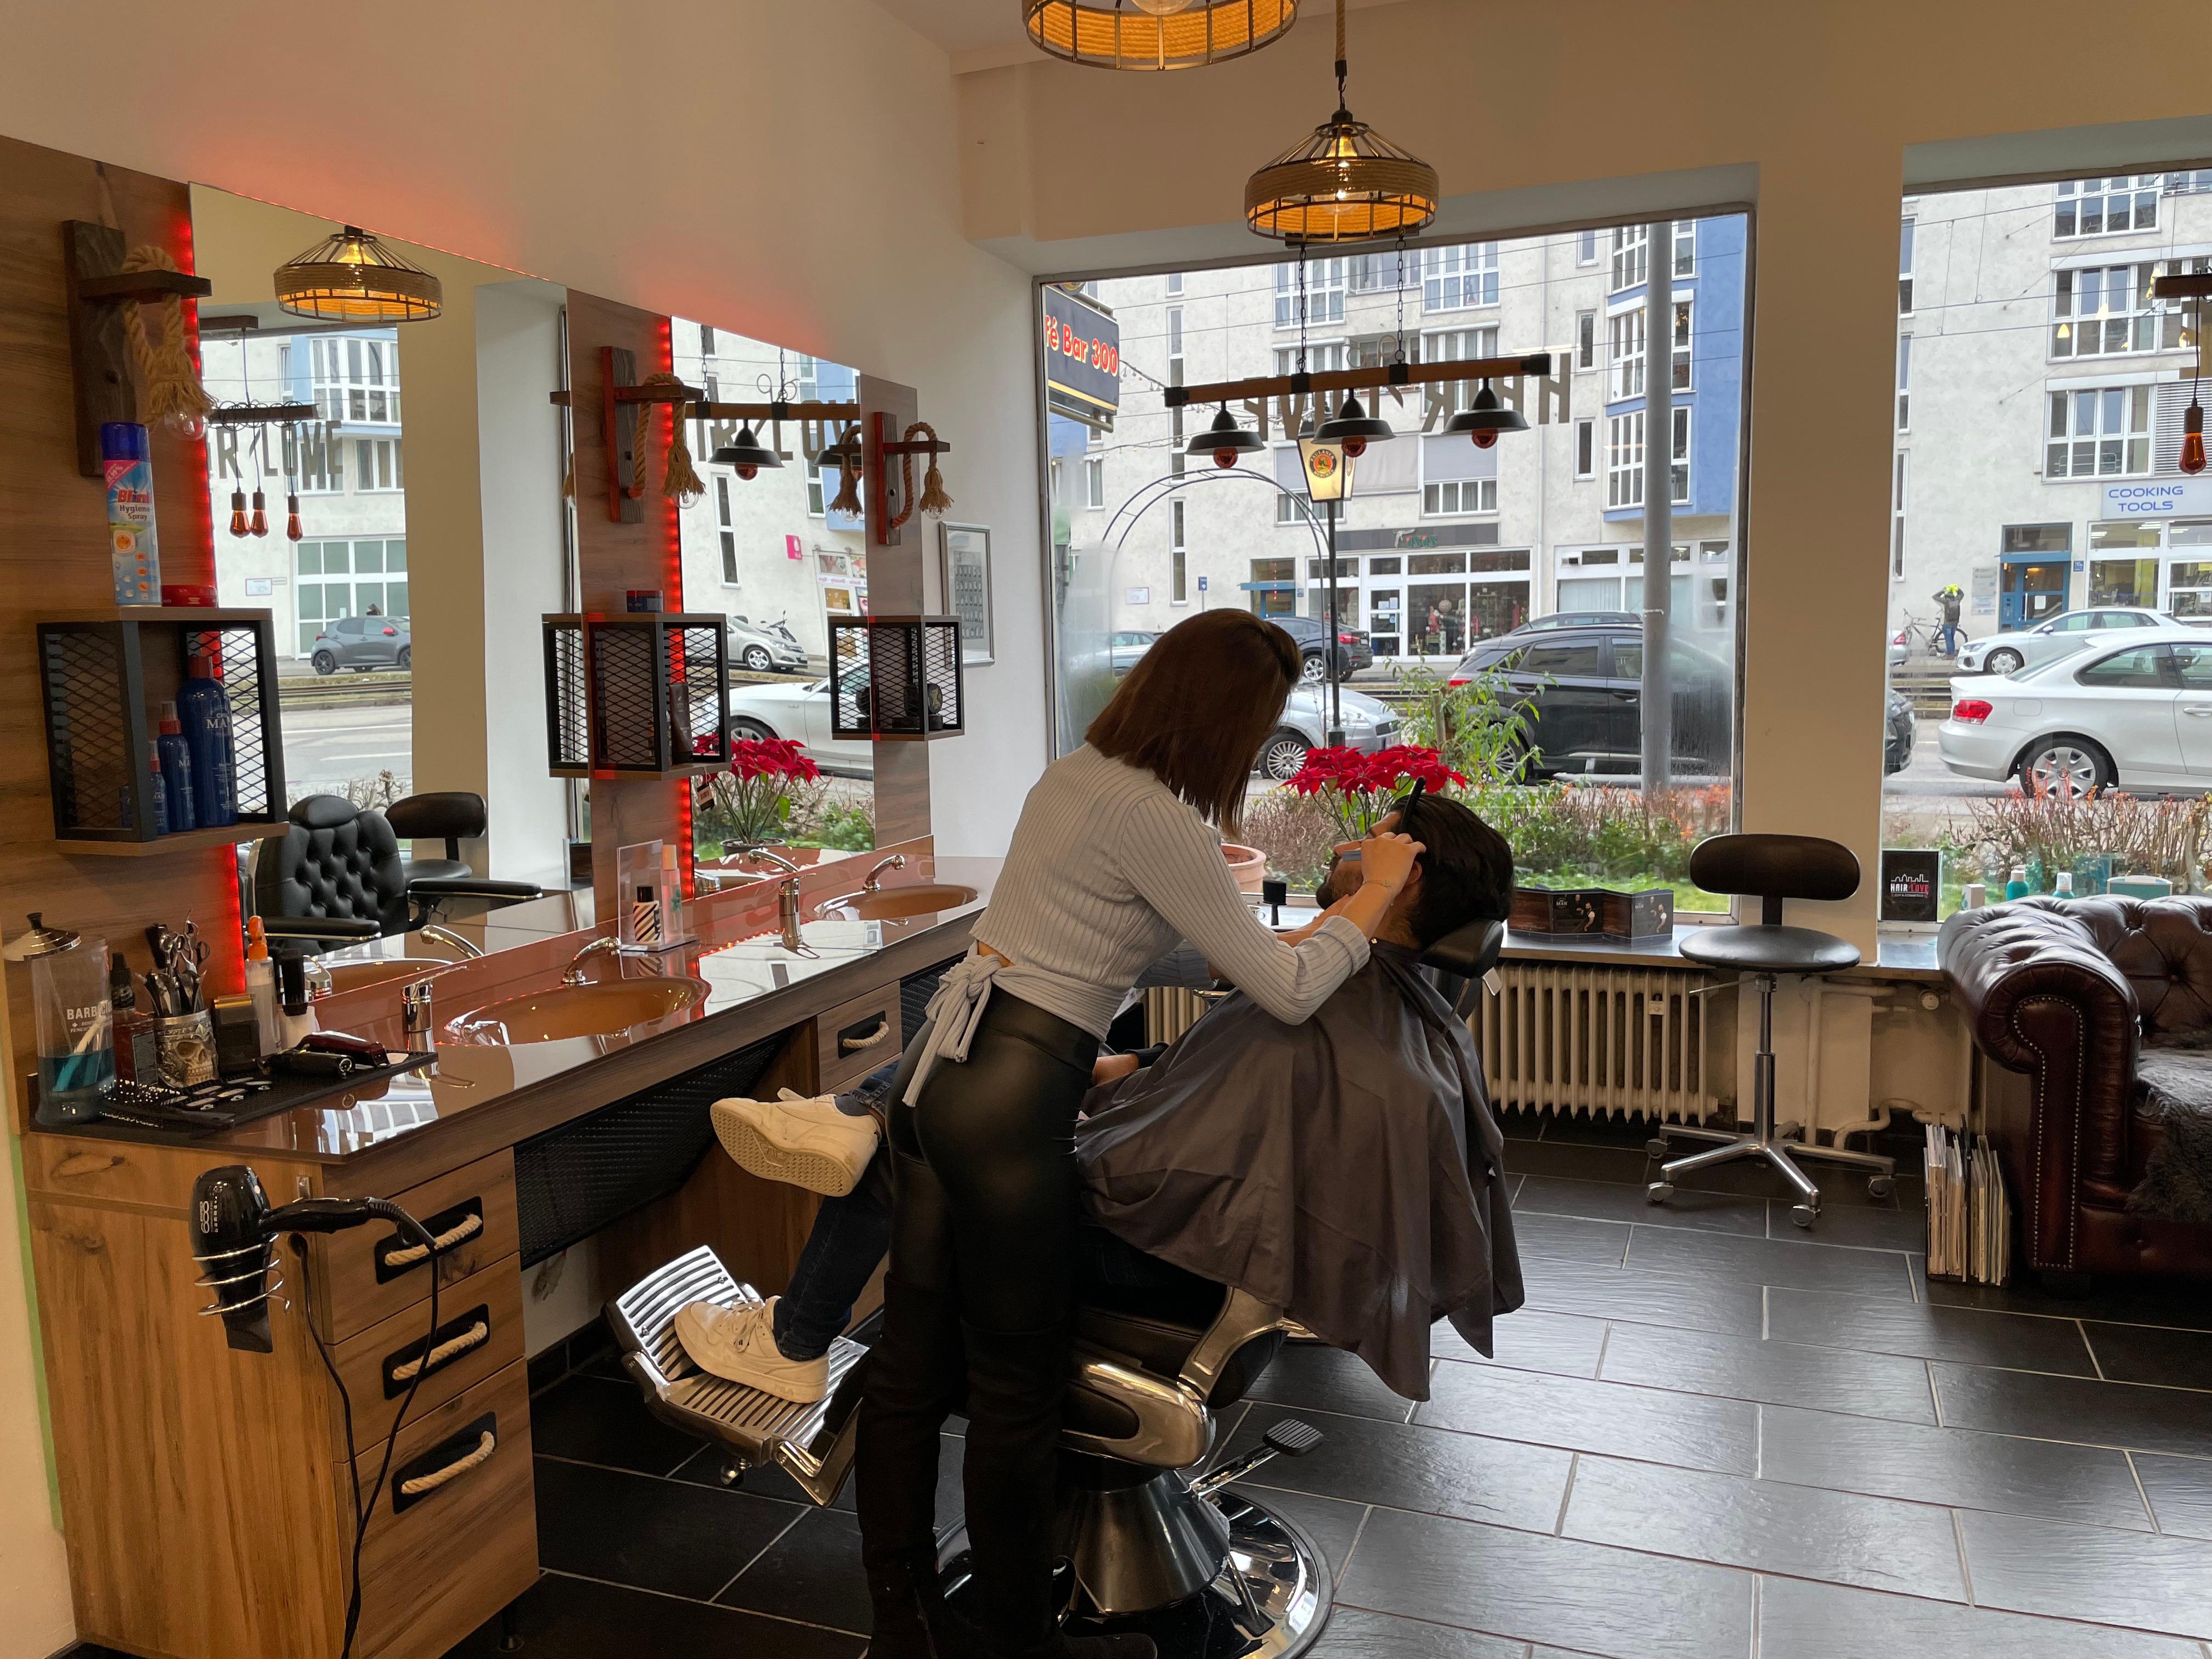 Hair Love - Friseur München, Schleißheimer Straße 246 in München